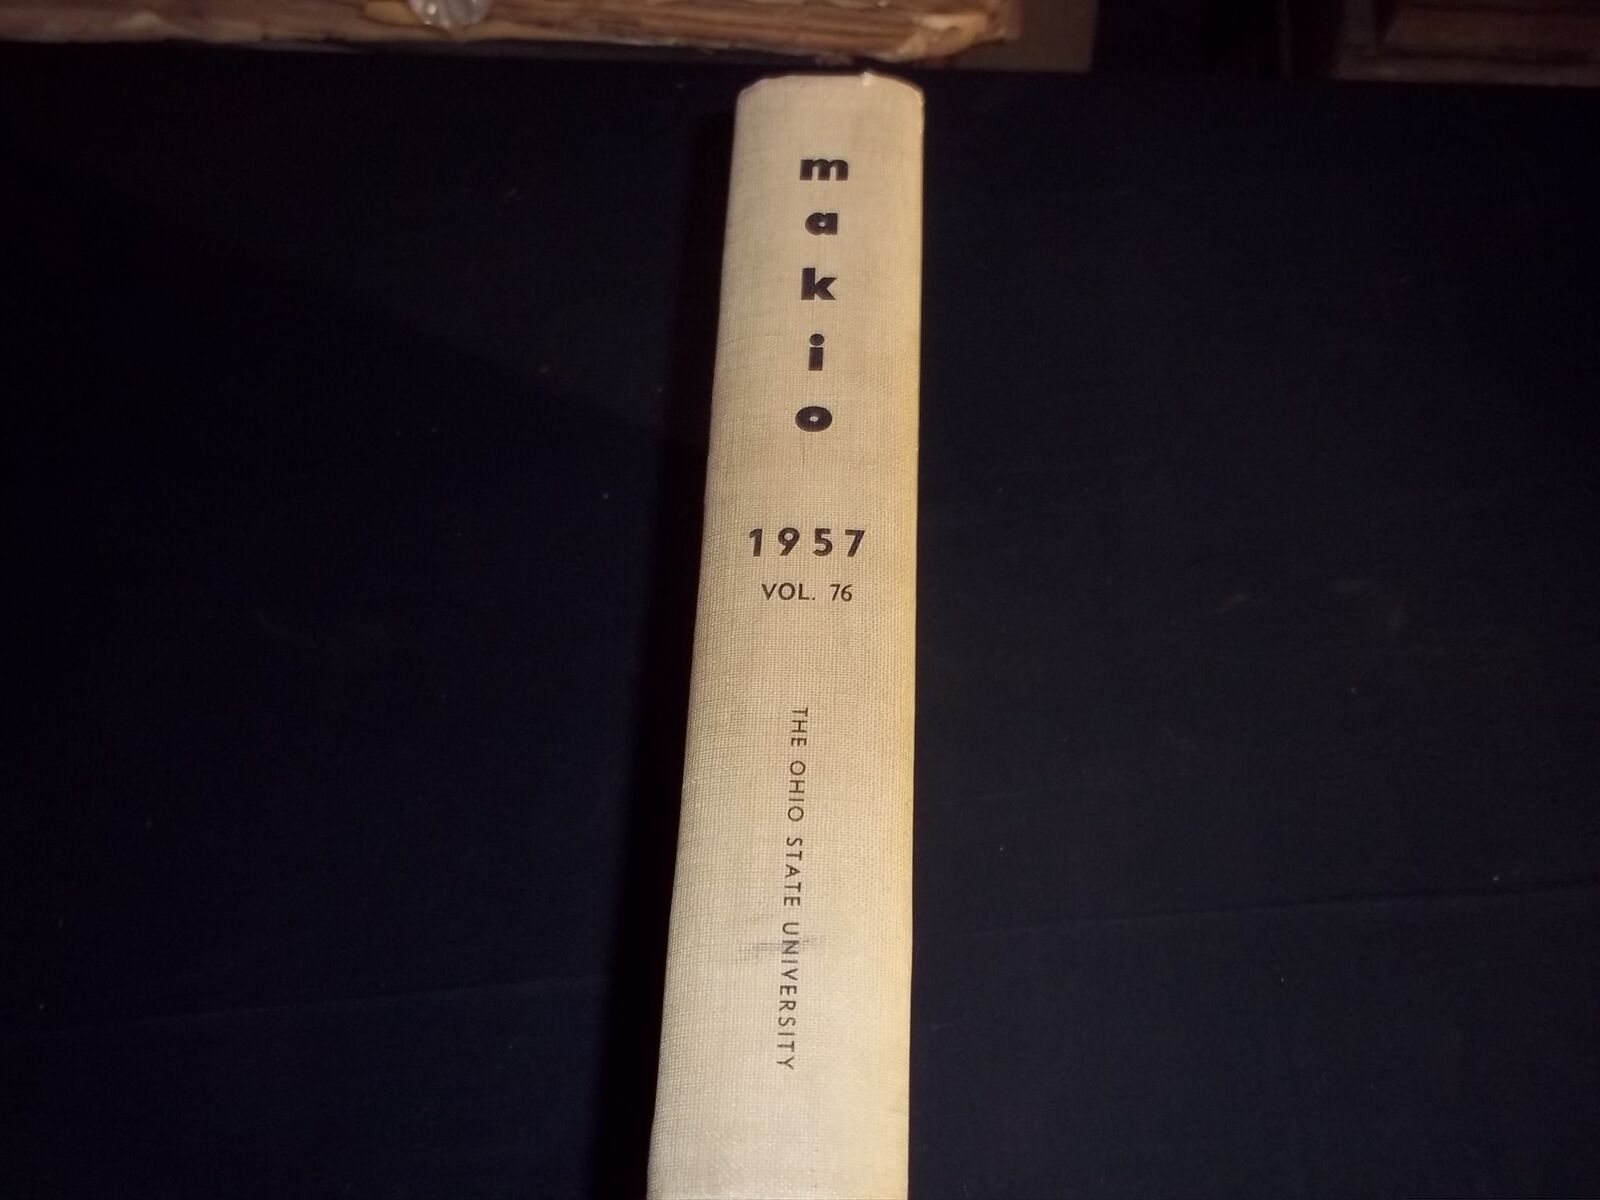 1957 MAKIO THE OHIO STATE UNIVERSITY YEARBOOK - FRANK HOWARD BASEBALL - YB 1737